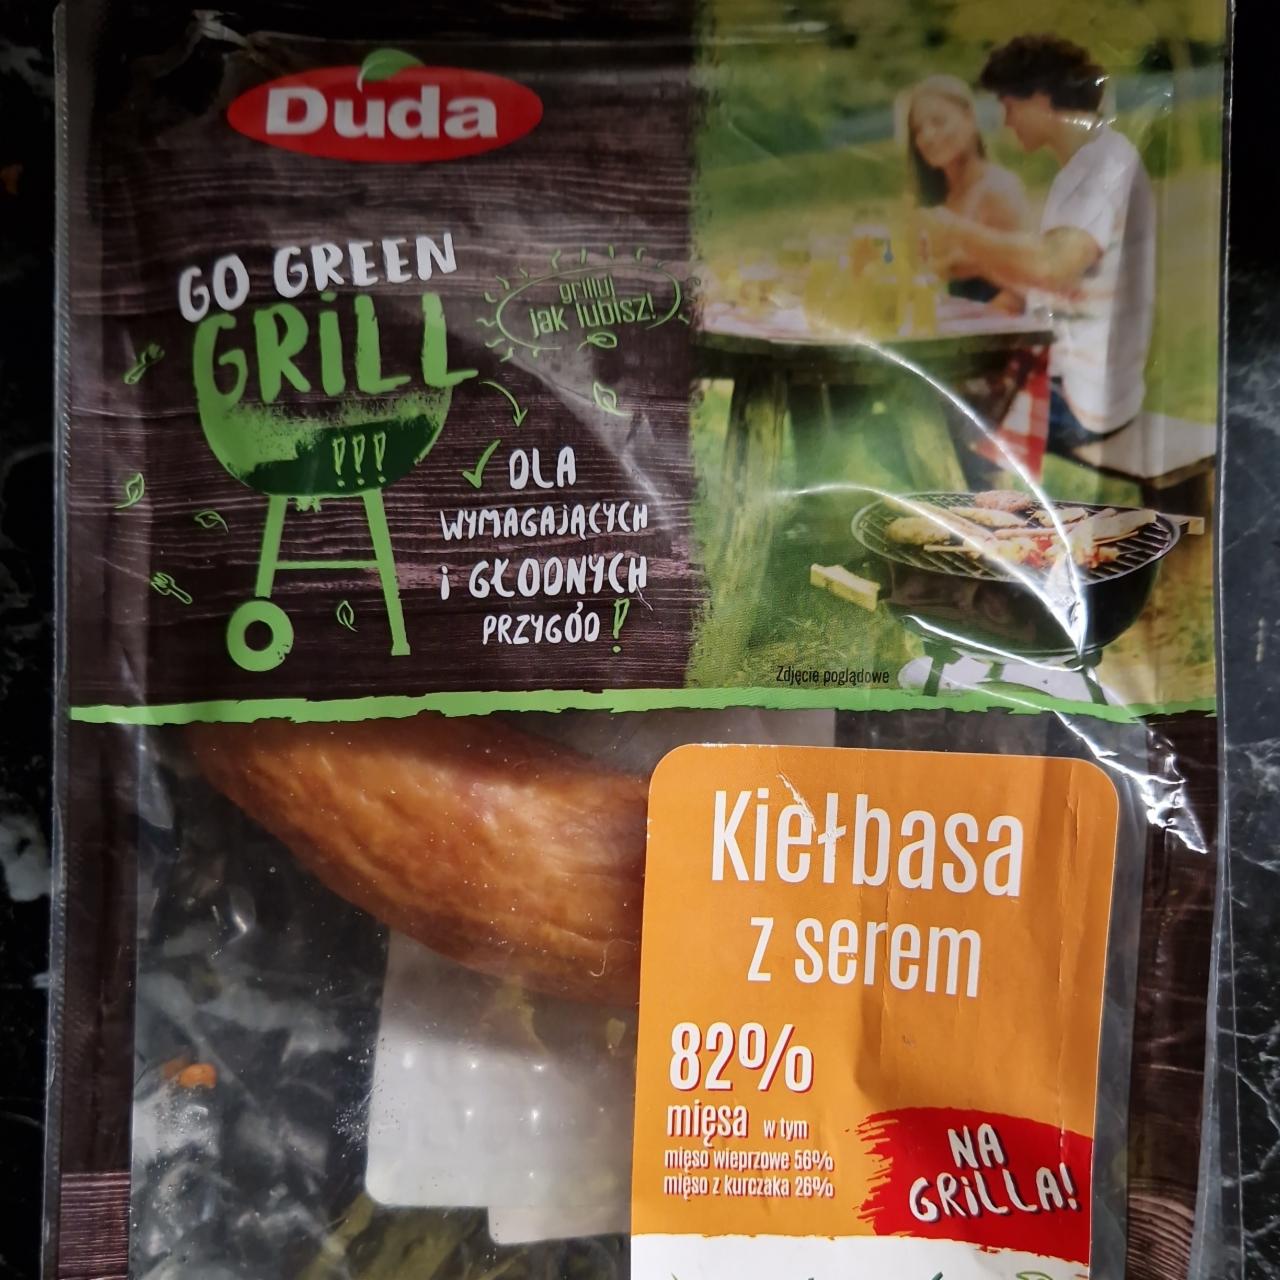 Zdjęcia - Kiełbaski z serem 82% Duda